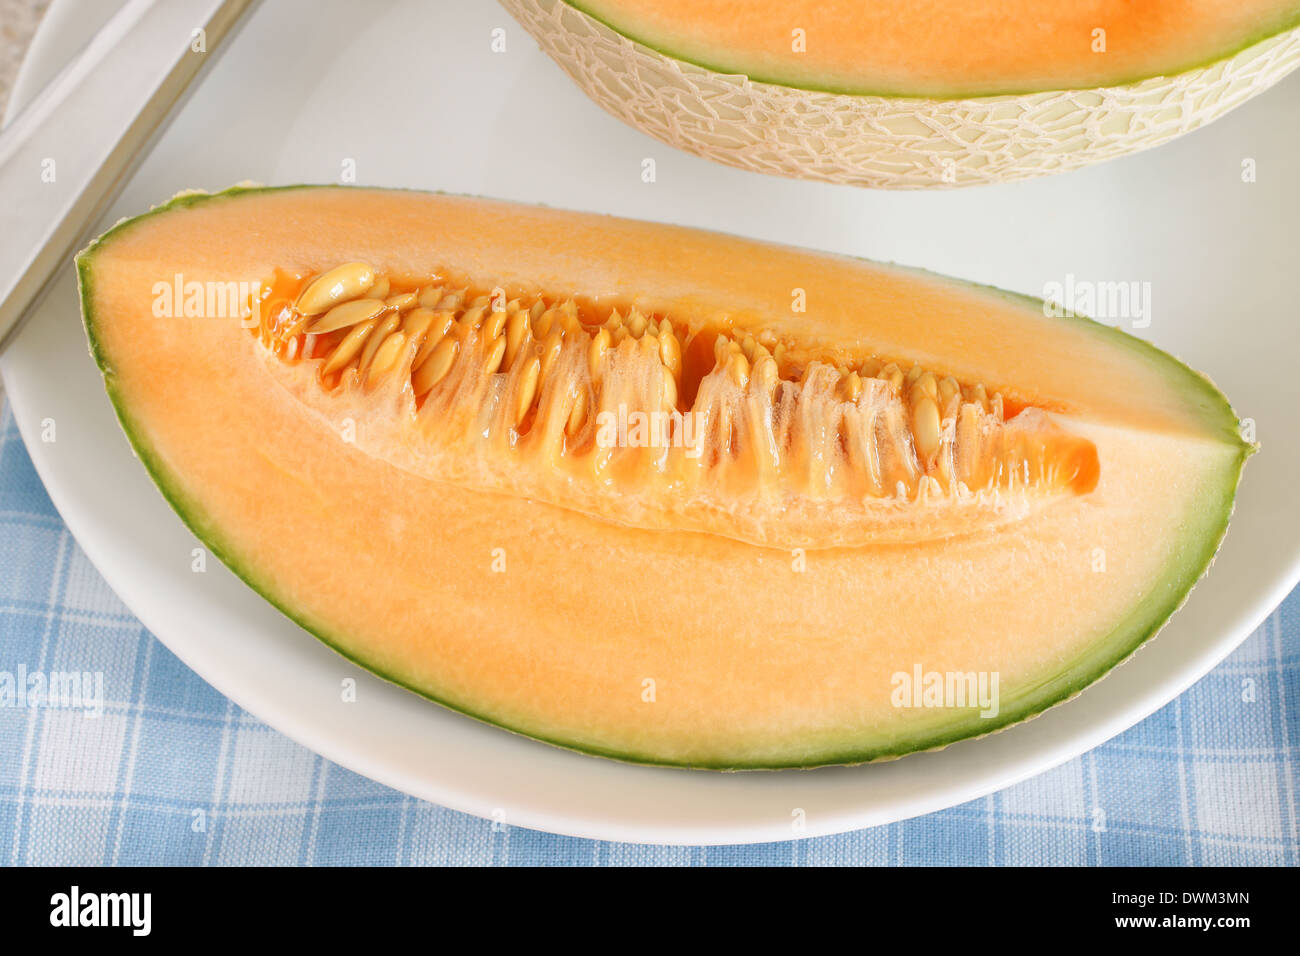 Eine beliebte Orange Melone Melone konkretisiert Stockfoto